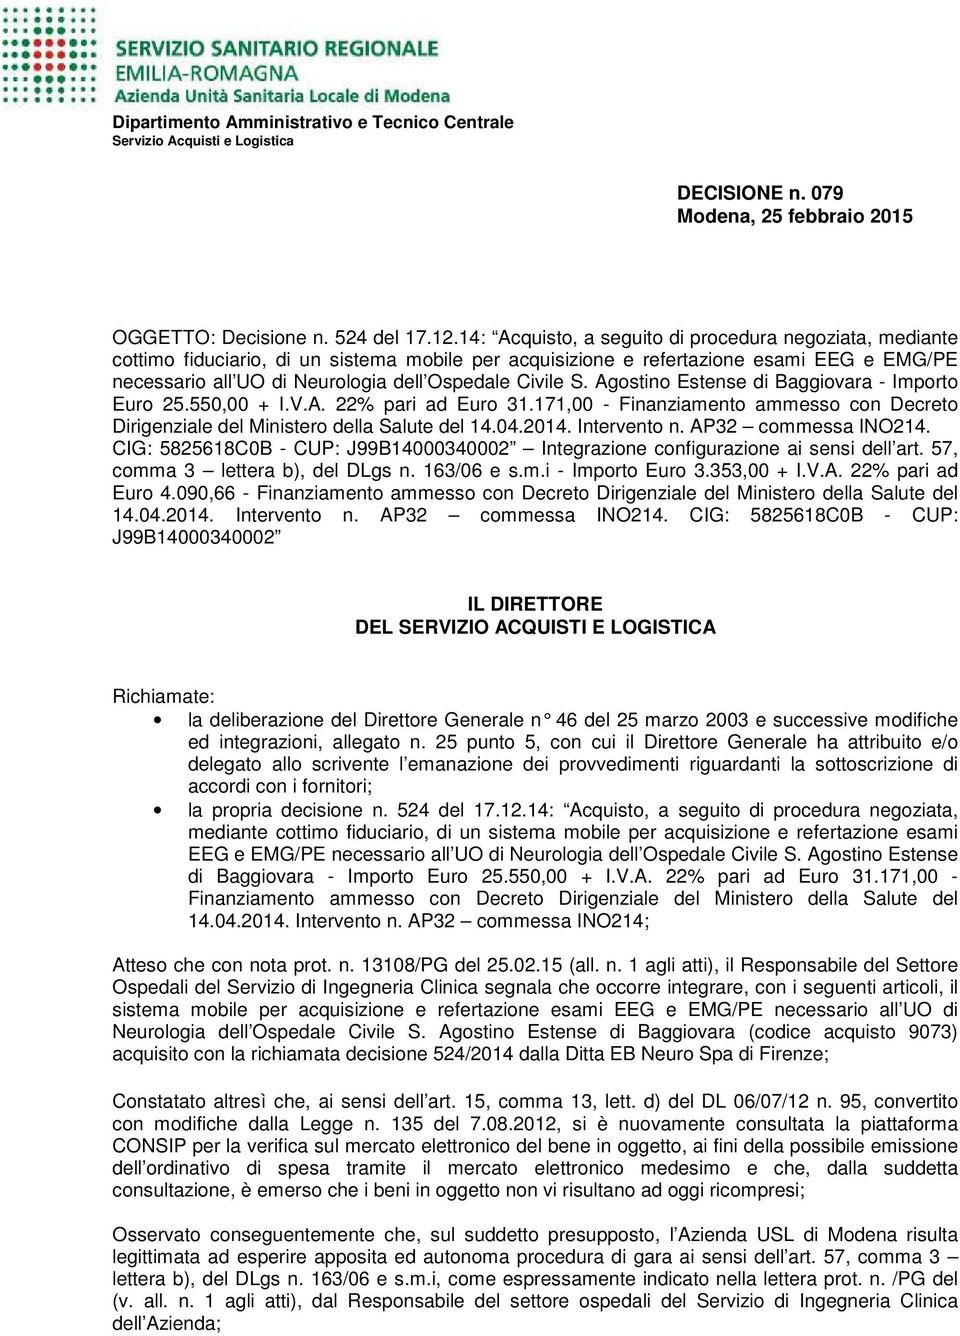 Civile S. Agostino Estense di Baggiovara - Importo Euro 25.550,00 + I.V.A. 22% pari ad Euro 31.171,00 - Finanziamento ammesso con Decreto Dirigenziale del Ministero della Salute del 14.04.2014.